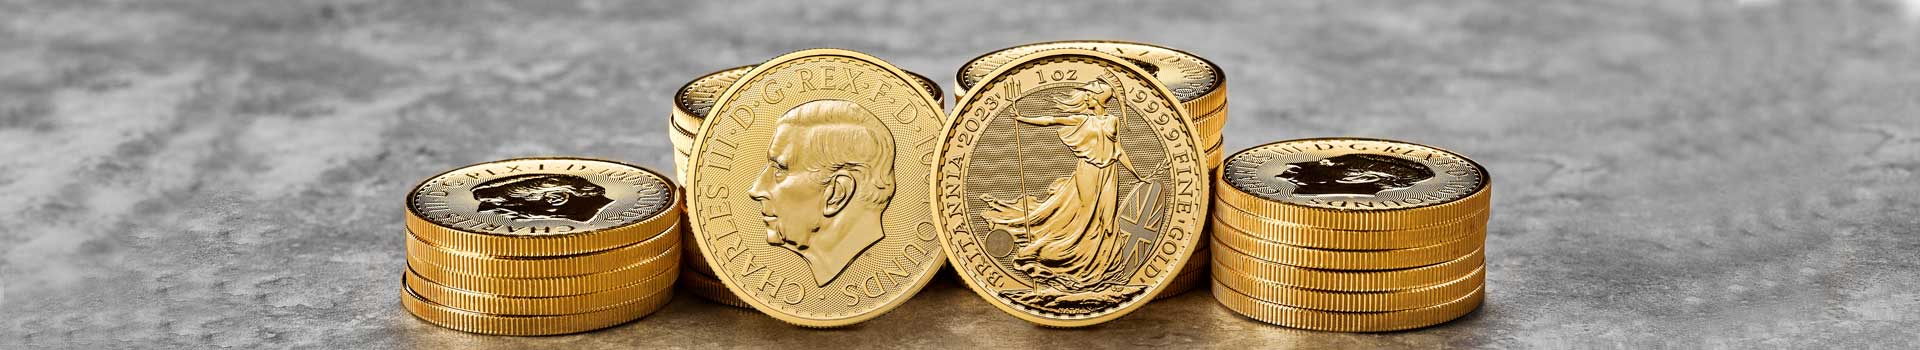 Un puñado de monedas de oro de la Britannia de diferente tamaño con el rostro del nuevo rey de Reino Unido, Carlos III